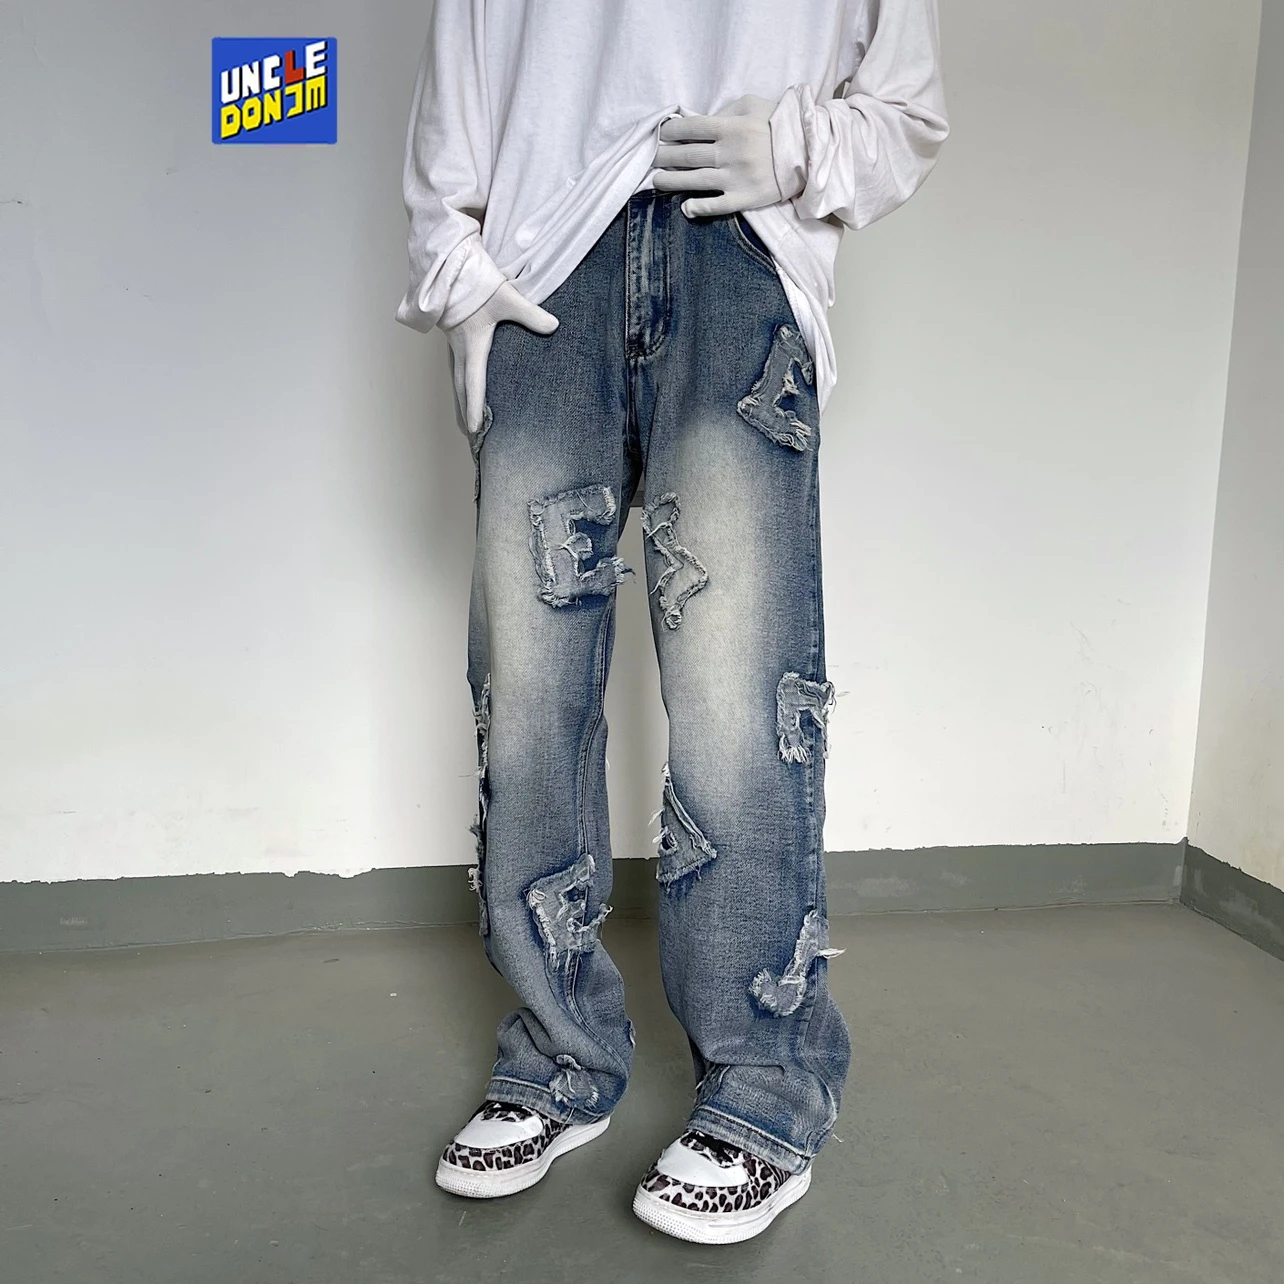 UNCLEDONJM pantalones vaqueros vintage para jeans desgastados holgados estilo hip jeans de diseñador para novio|Pantalones vaqueros| - AliExpress